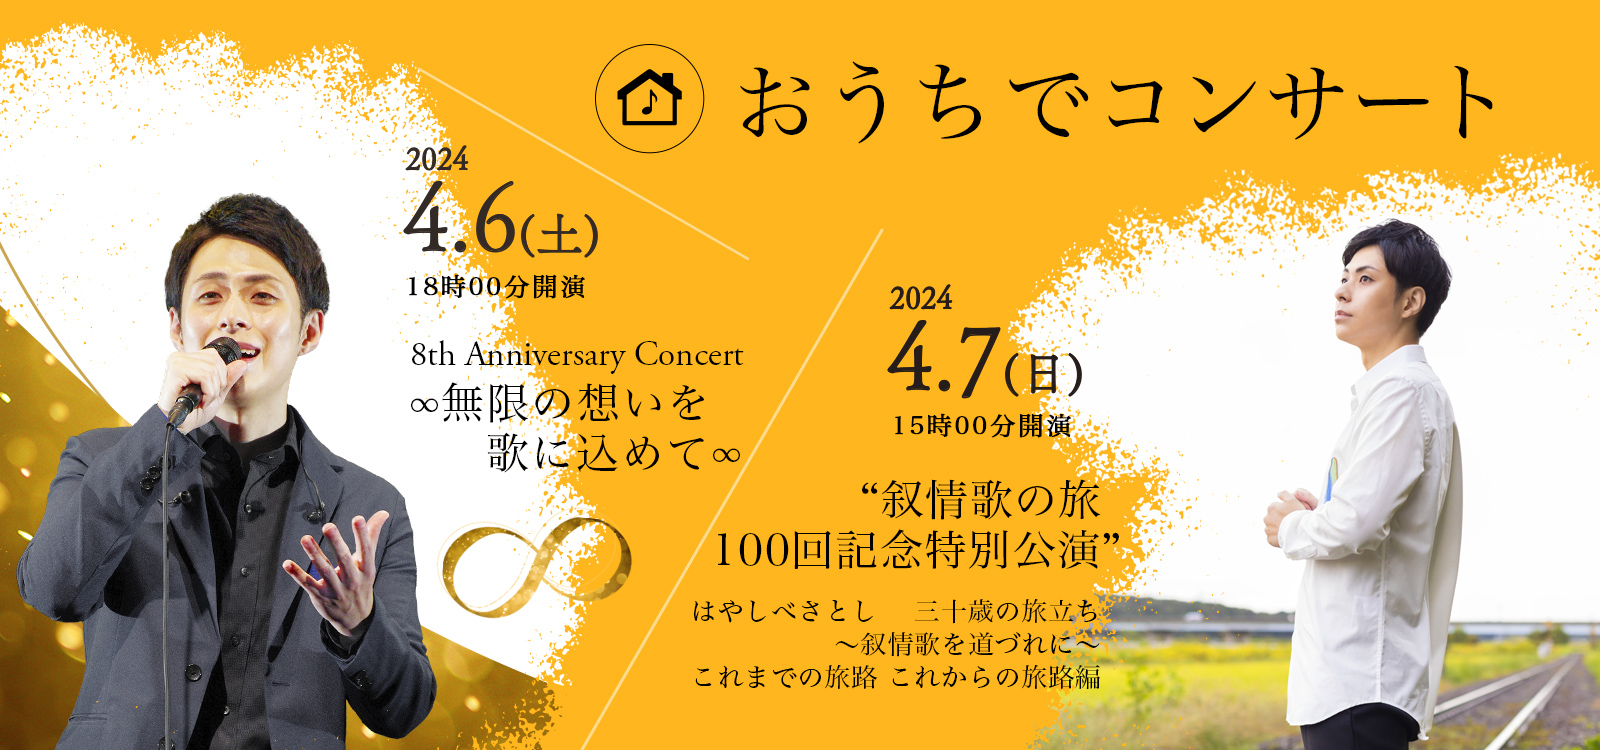 おうちでコンサート 林部智史 8th Anniversary Concert ∞ 無限の想いを 歌に込めて ∞ ～叙情歌を道づれに～